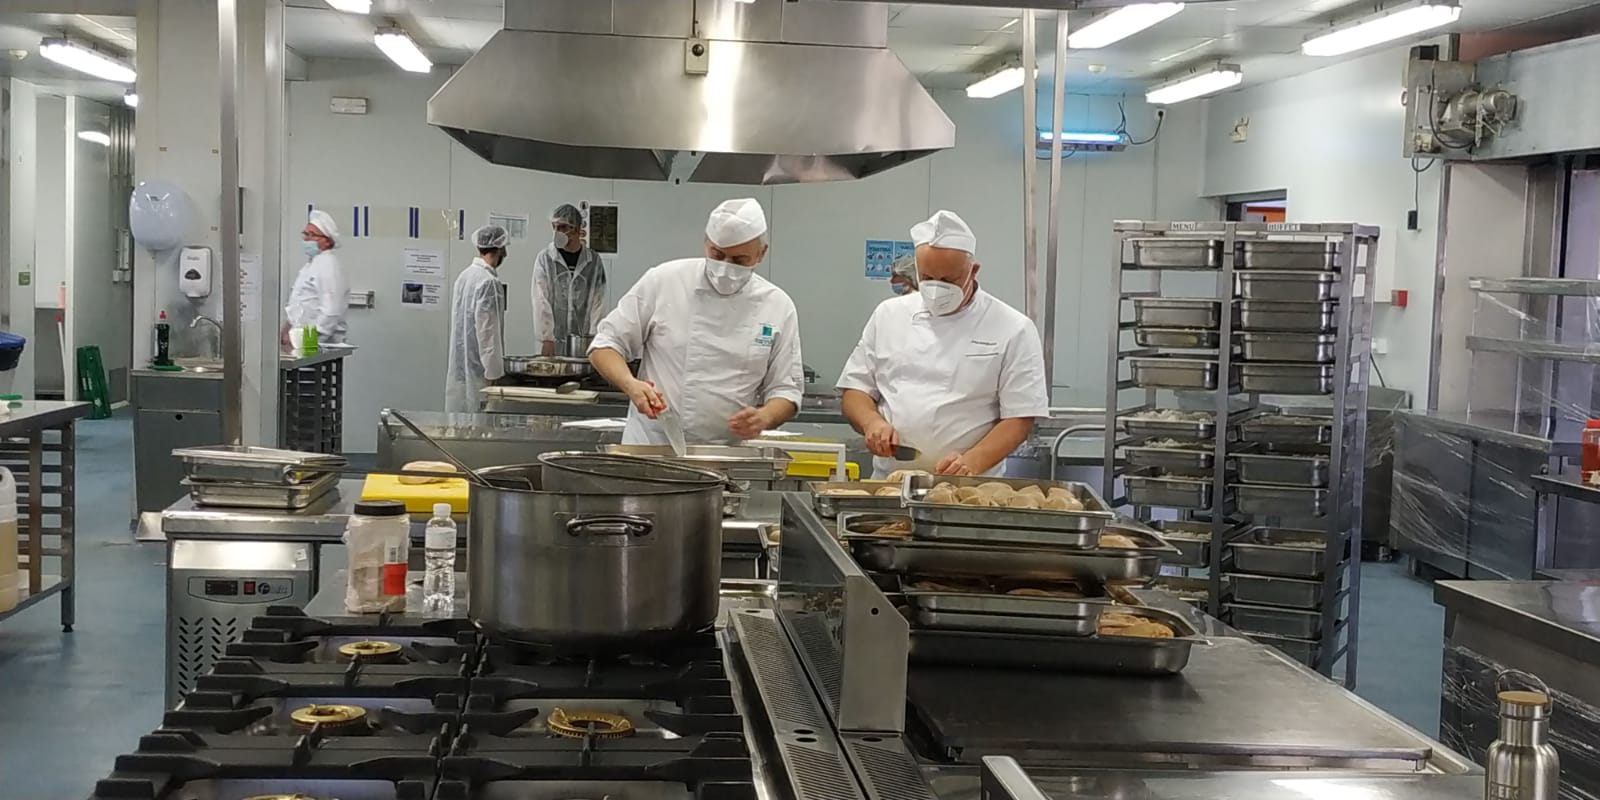 La escuela de hostelería de Leioa reparte más de 400 menús diarios con la  World Central Kitchen - InfoHoreca